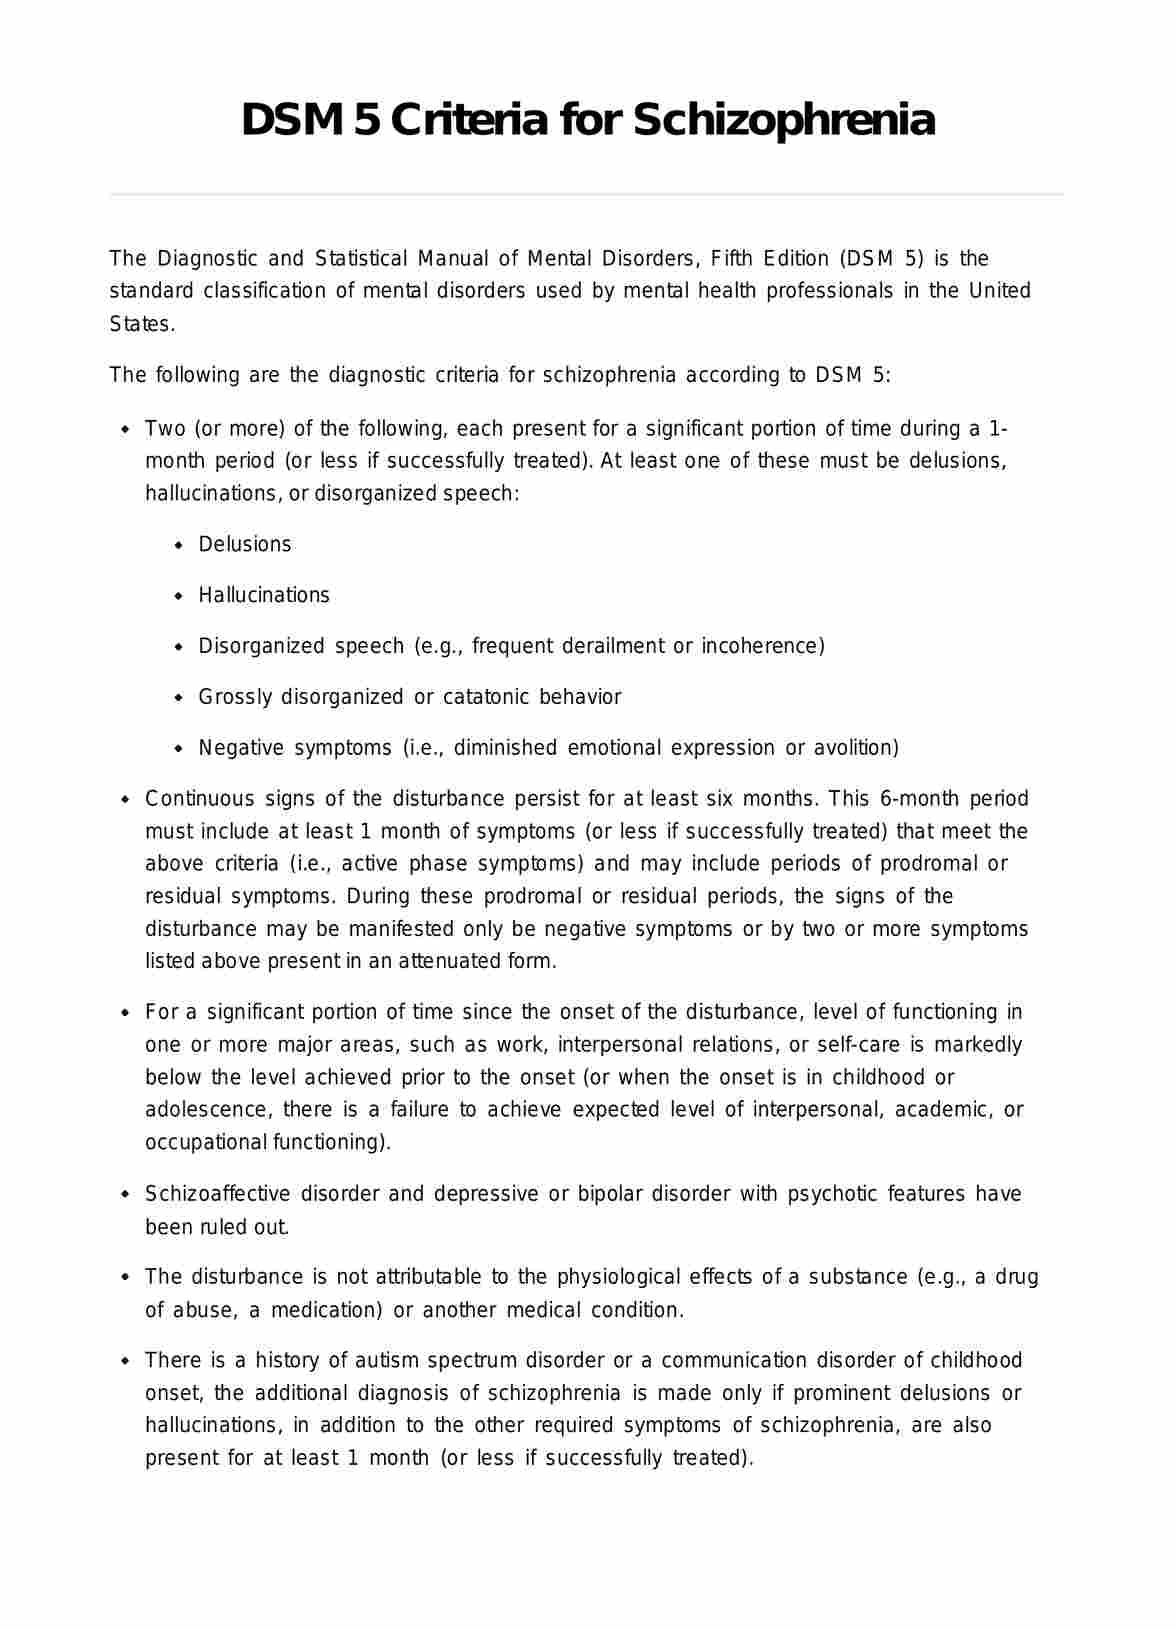 DSM 5 Criteria for Schizophrenia PDF Example